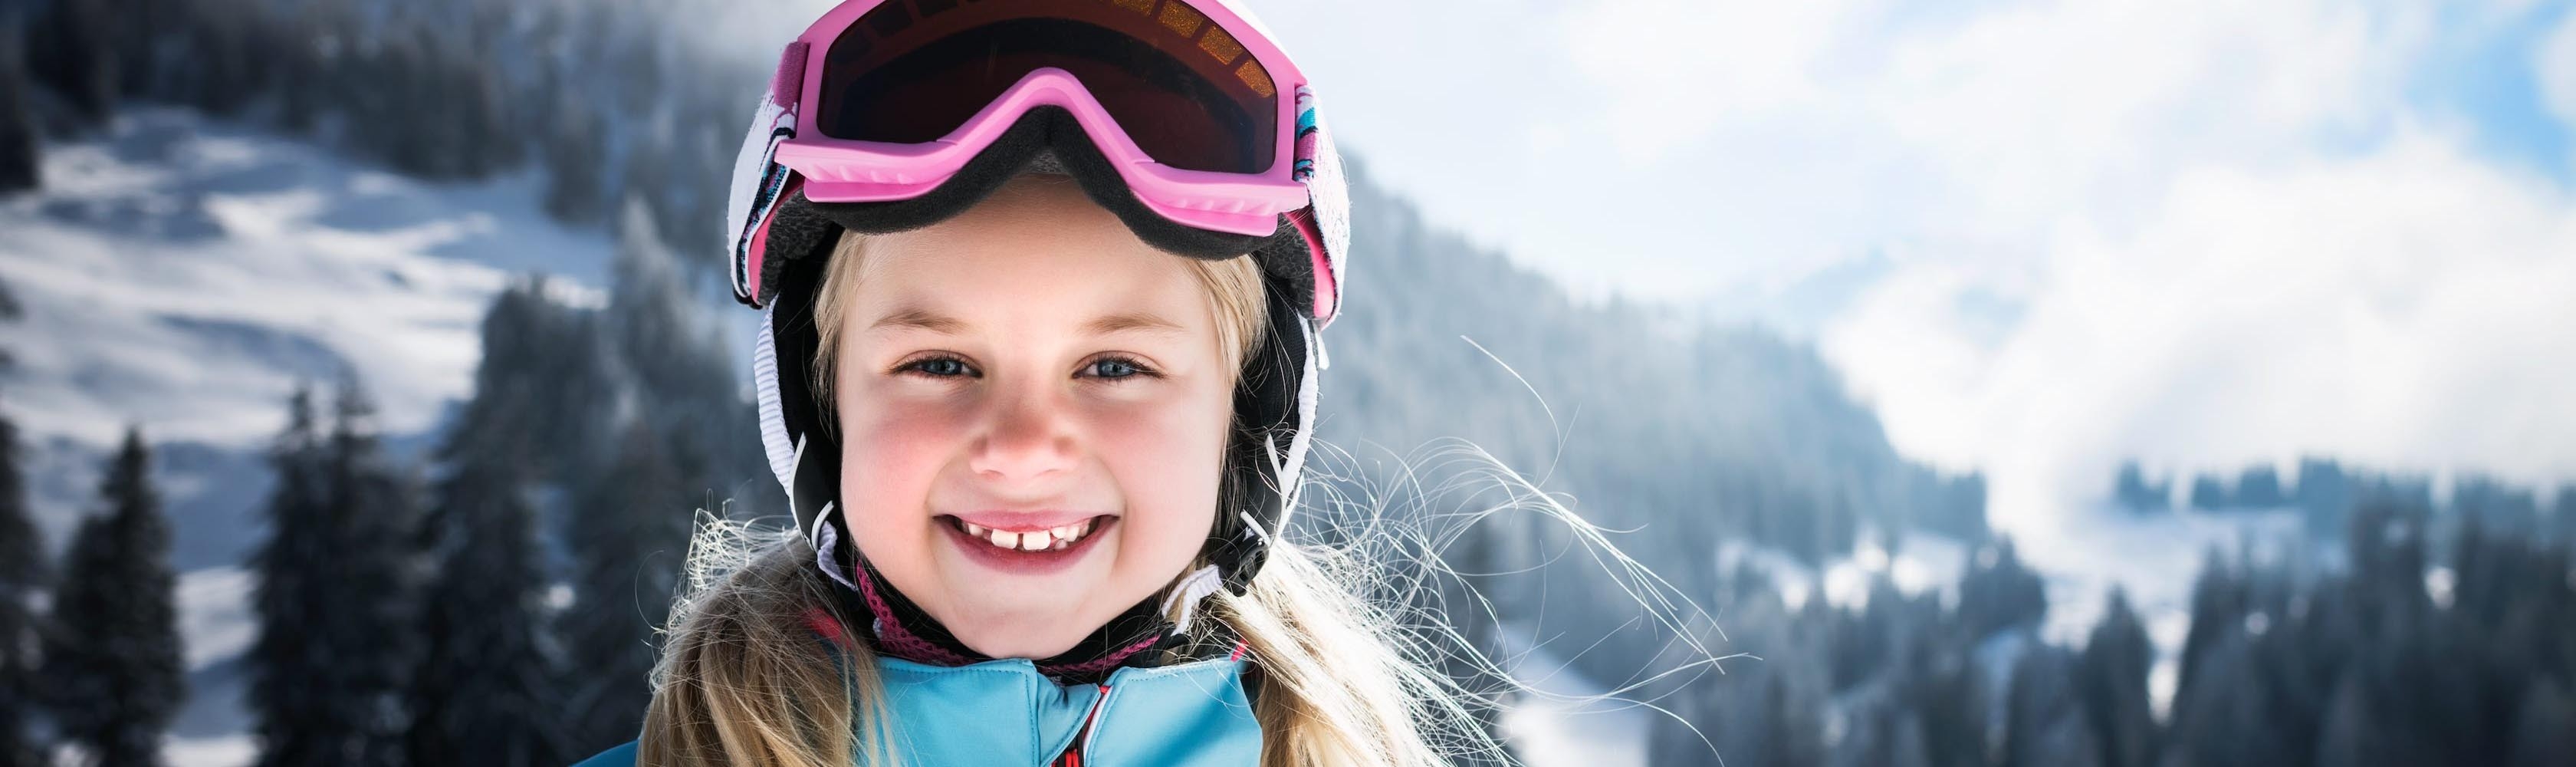 Une fille avec un casque de ski est prête pour faire la descente en luge